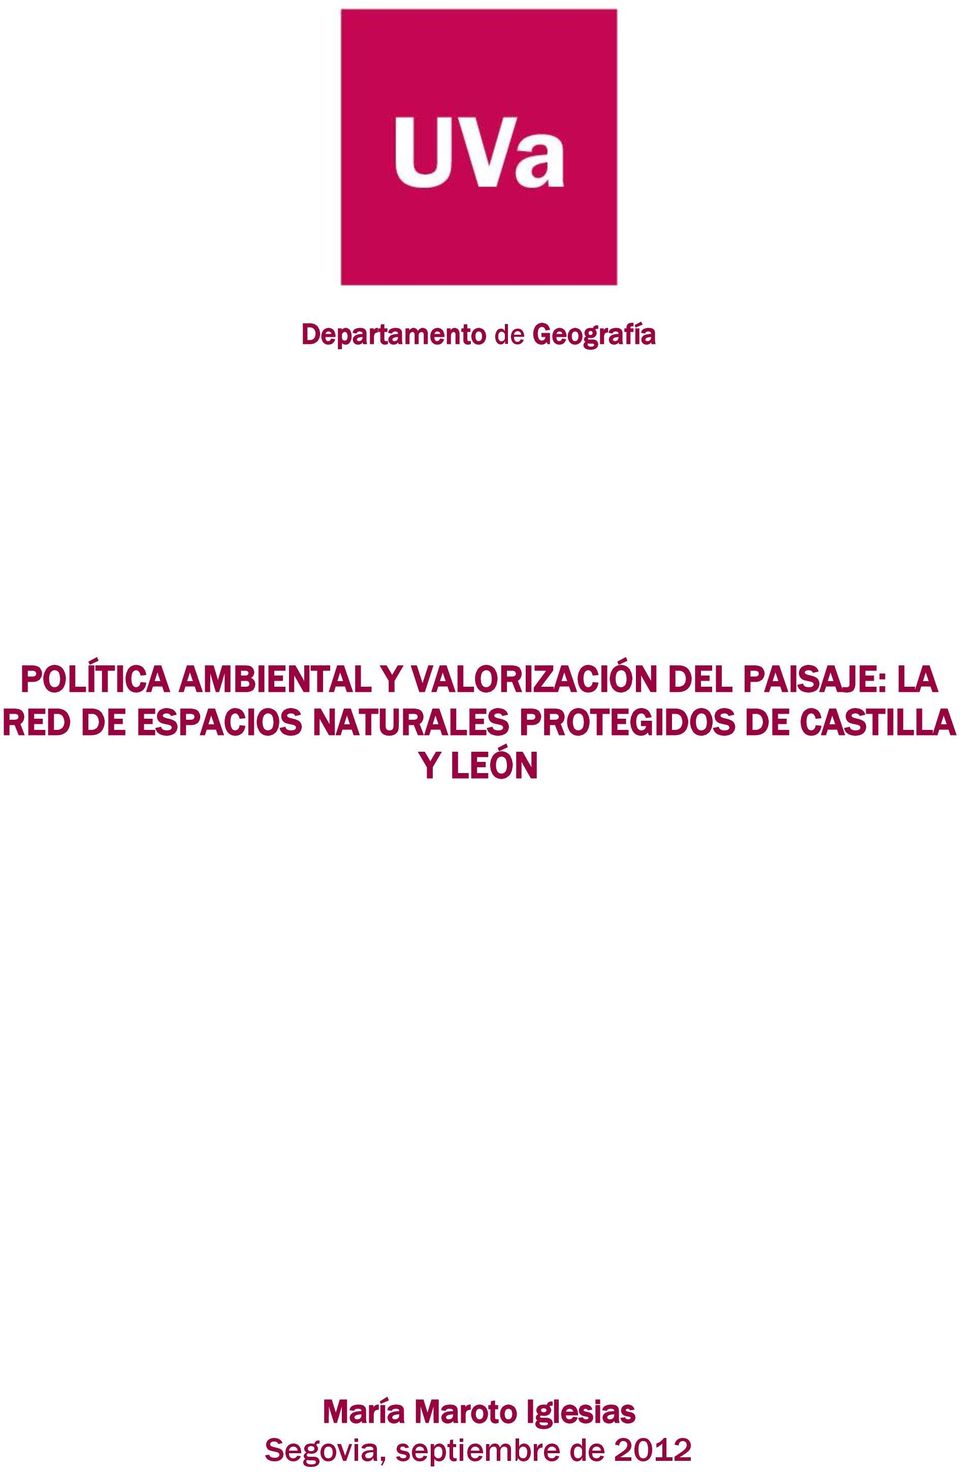 ESPACIOS NATURALES PROTEGIDOS DE CASTILLA Y